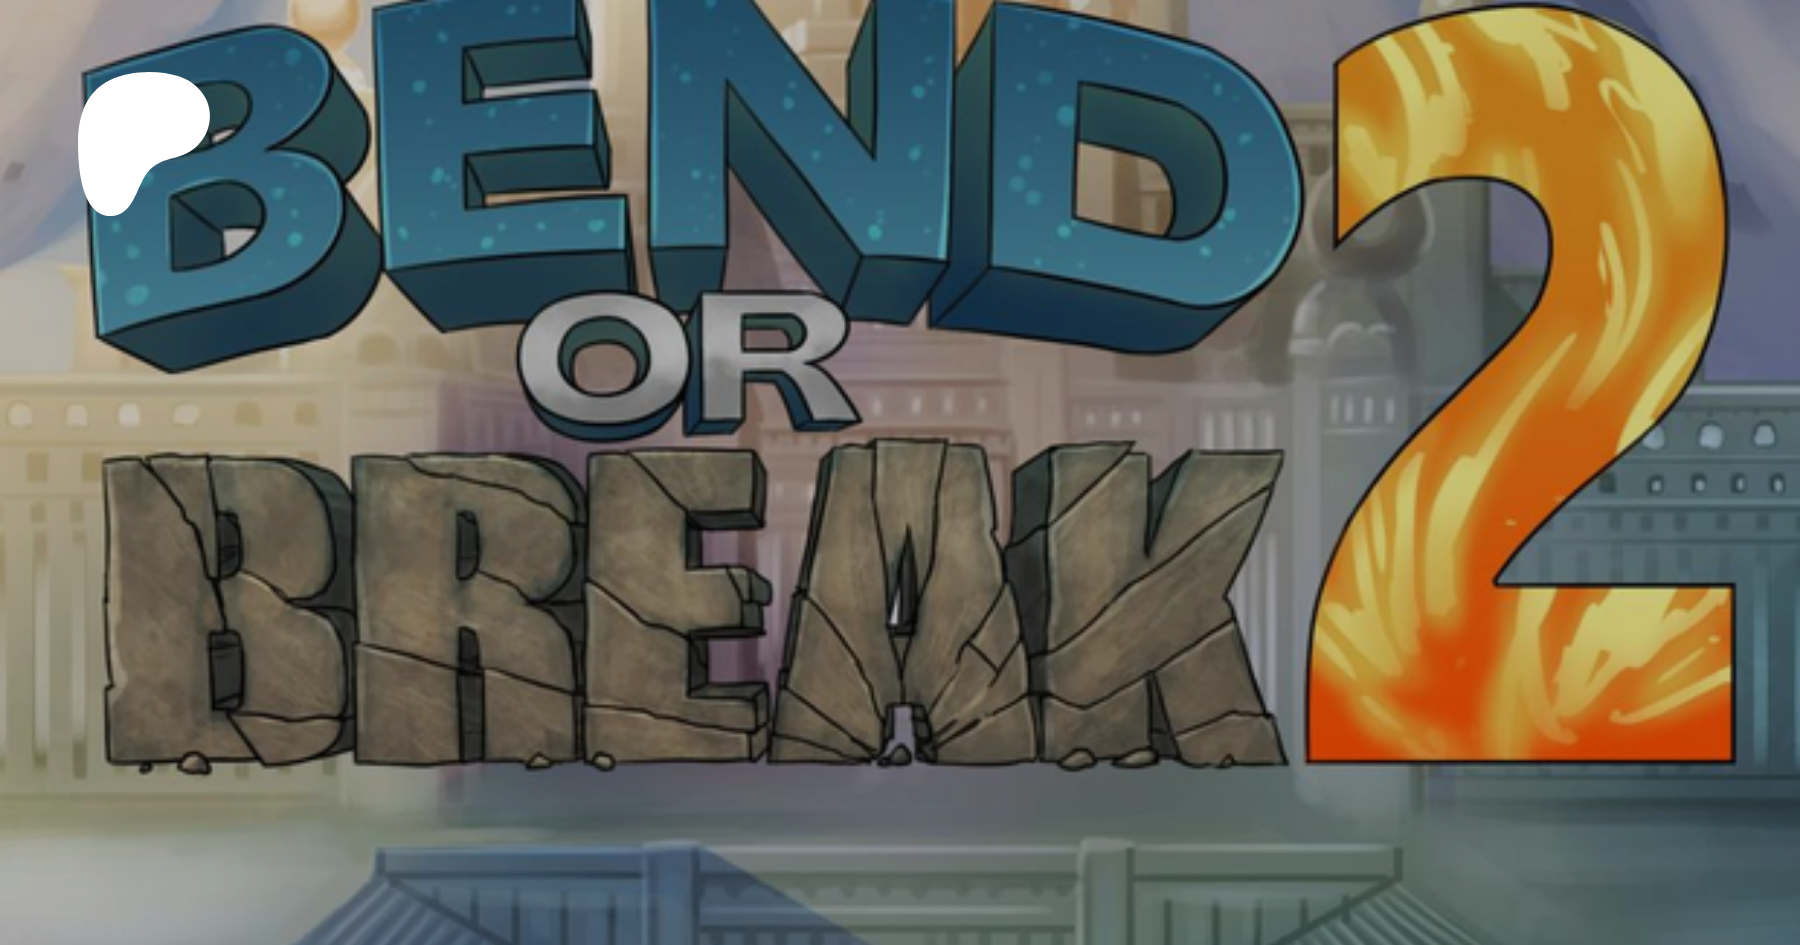 Bend or break game